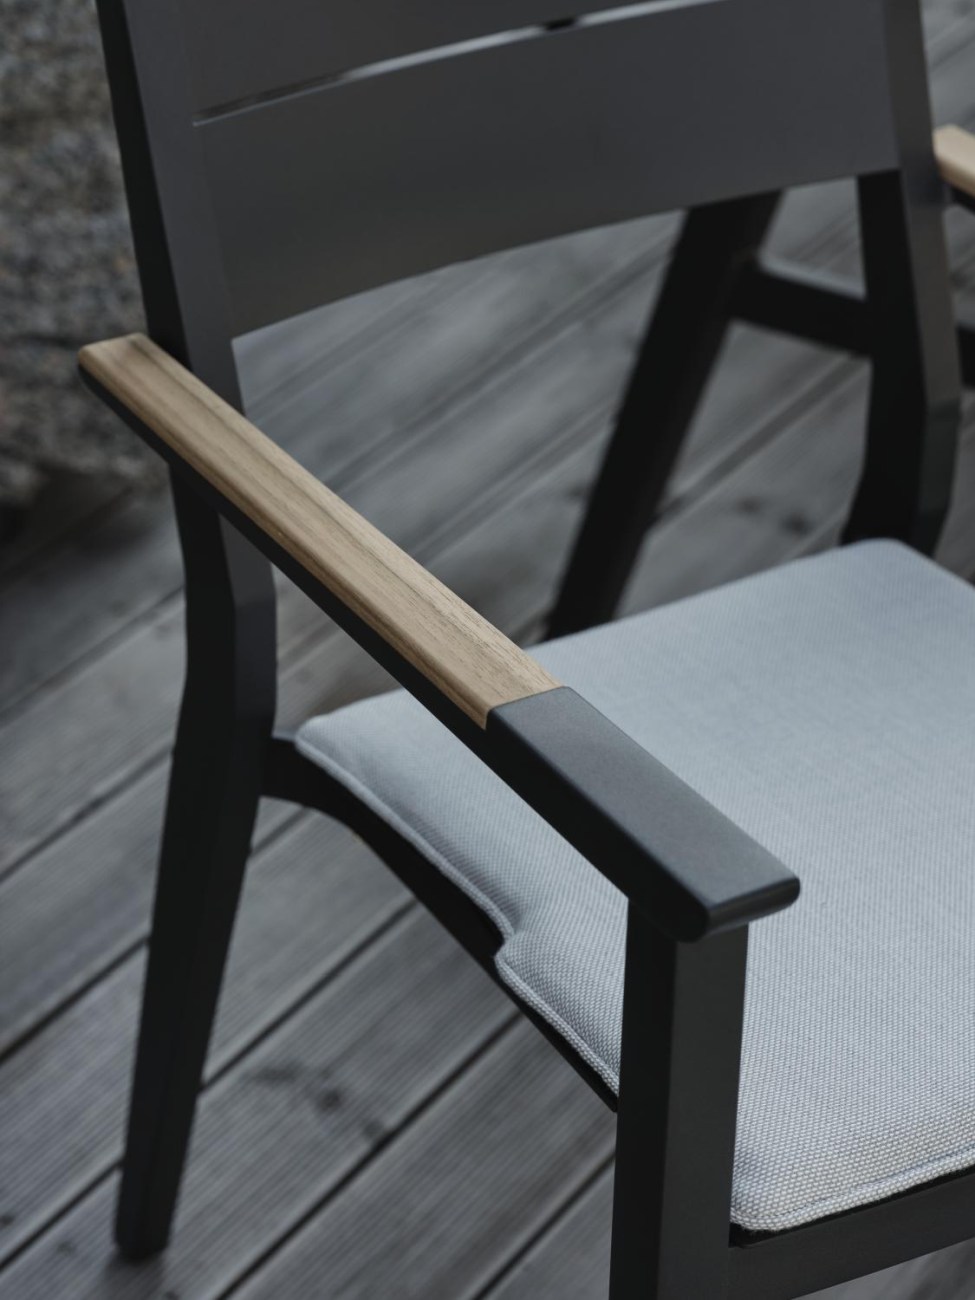 Der Gartenstuhl Chios überzeugt mit seinem modernen Design. Gefertigt wurde er aus Metall, welches einen schwarzen Farbton besitzt. Die Armlehne ist aus Teakholz und hat eine natürliche Farbe. Die Sitzhöhe des Stuhls beträgt 46 cm.